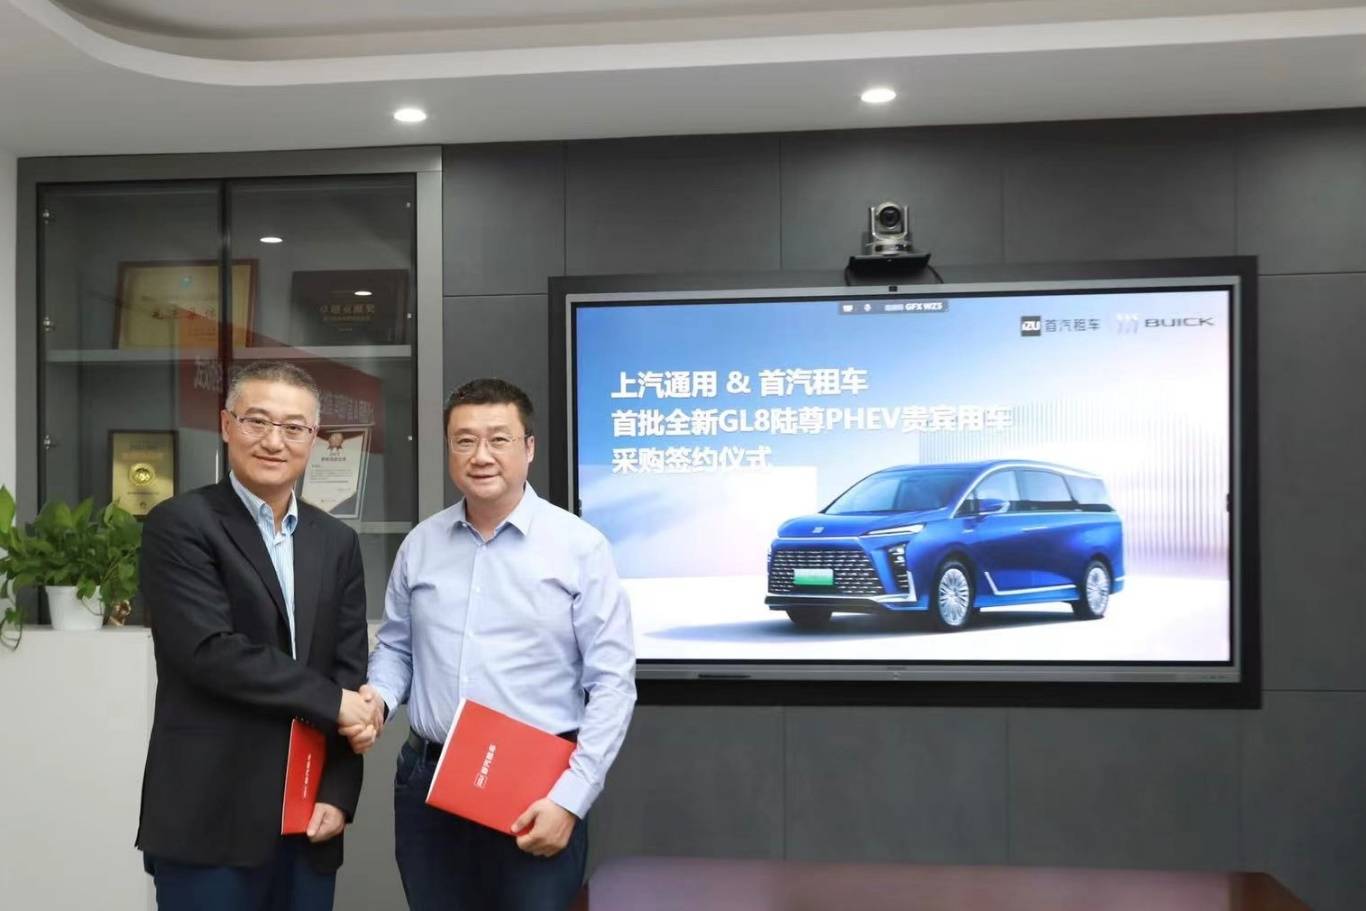 上汽通用汽车与首汽租车_搜狐汽车_搜狐汽车签署了新的GL8陆尊PHEV VIP轿车购买协议。com